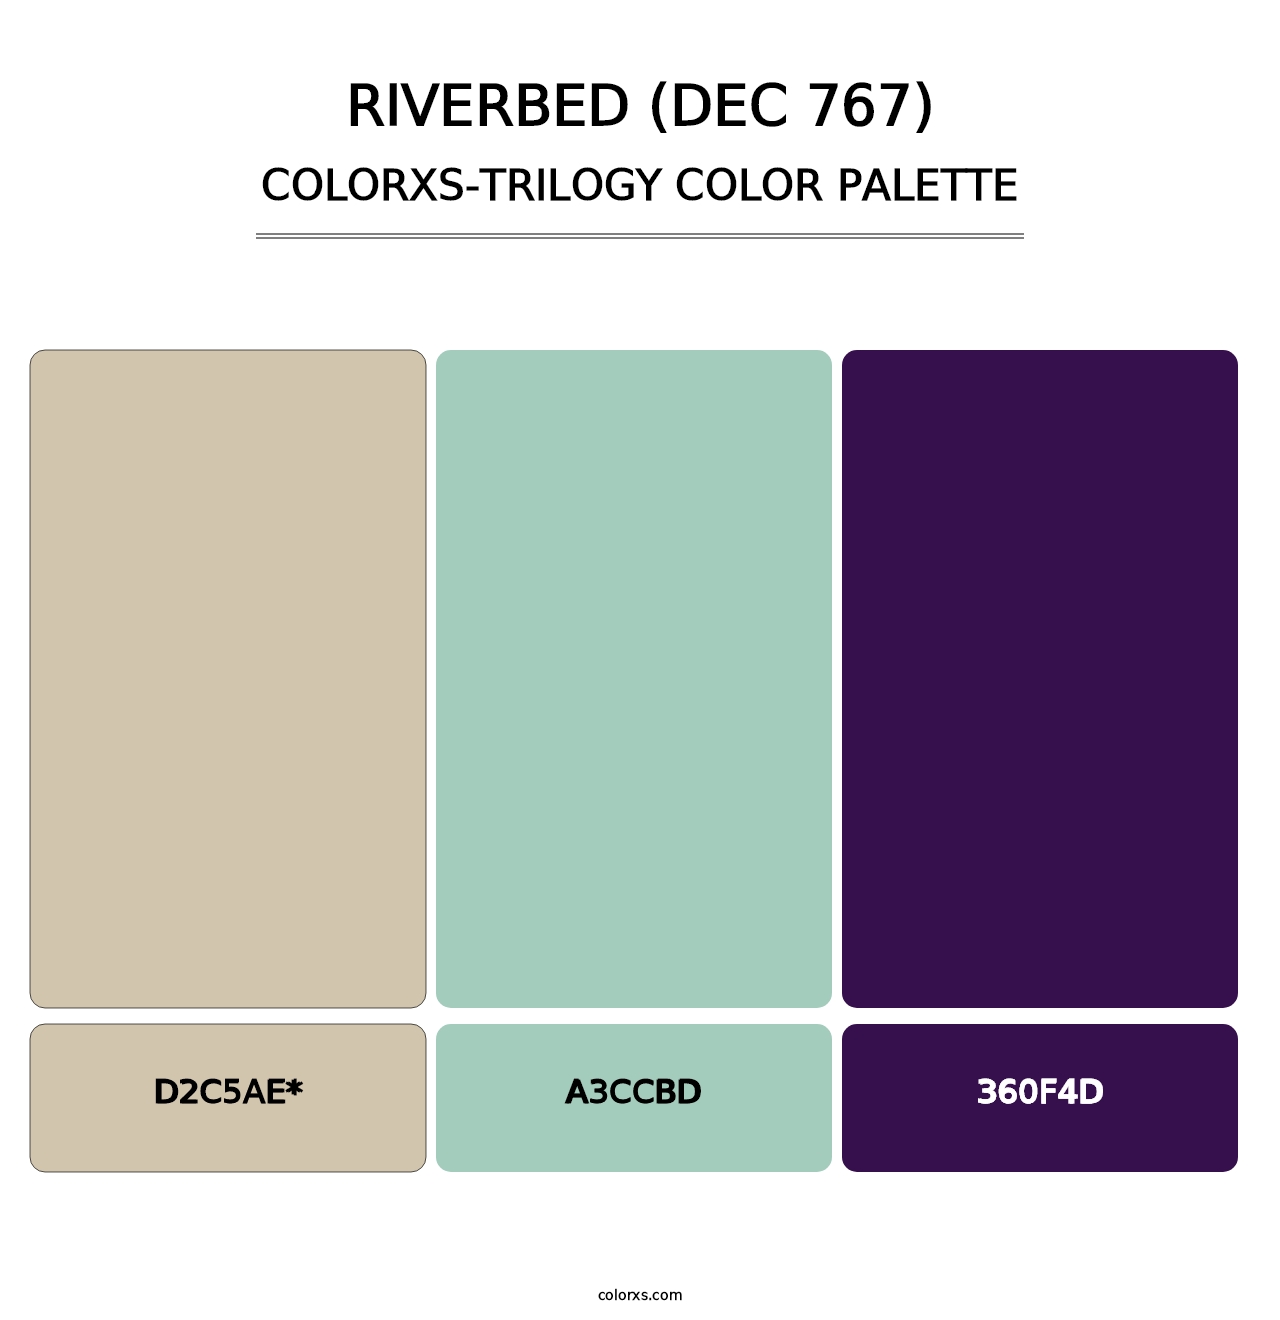 Riverbed (DEC 767) - Colorxs Trilogy Palette